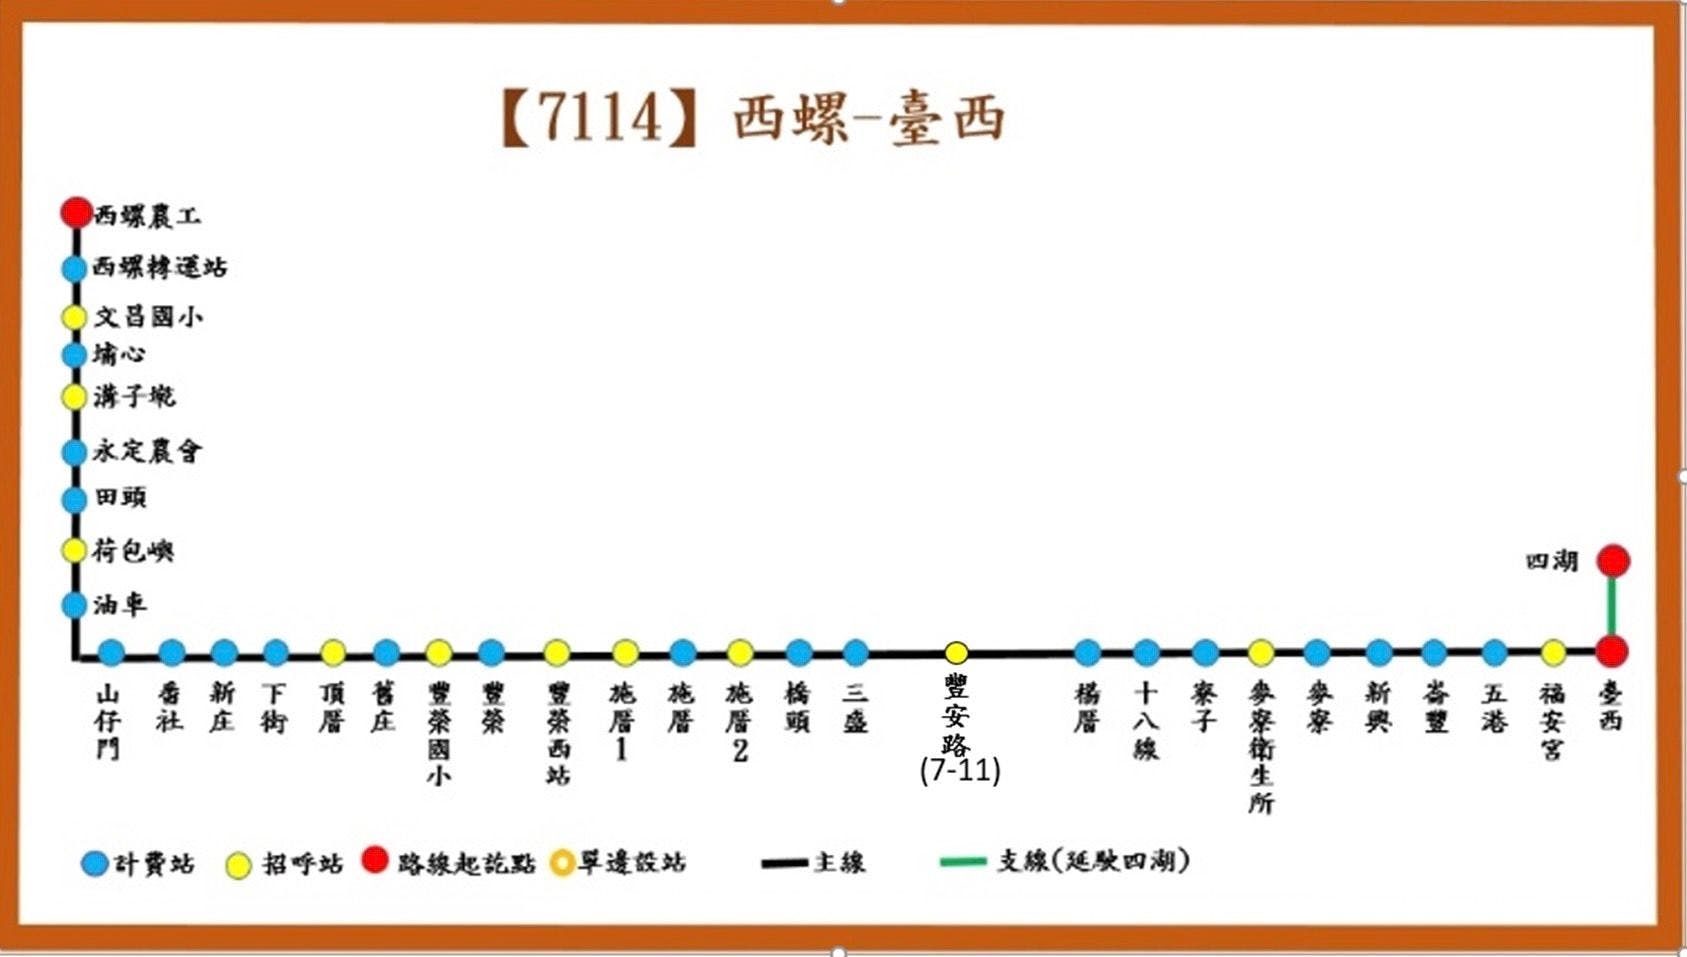 7114路線圖-臺西客運